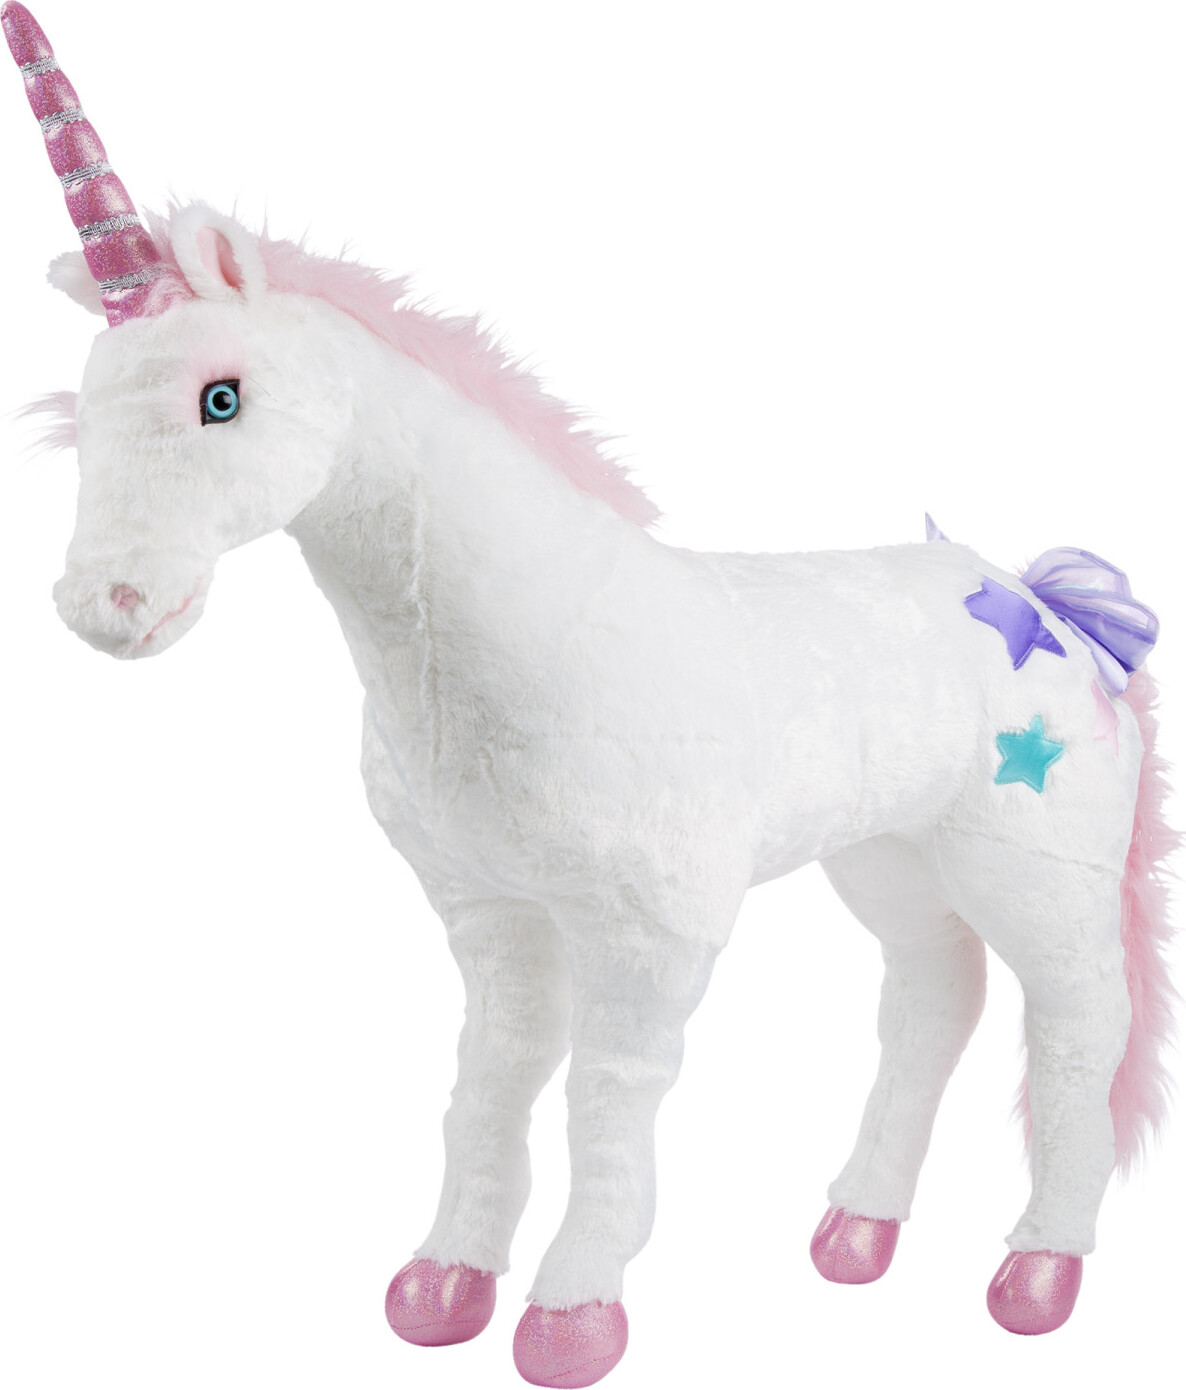 Unicorn Jumbo Stuffed Animal - Imagine That Toys